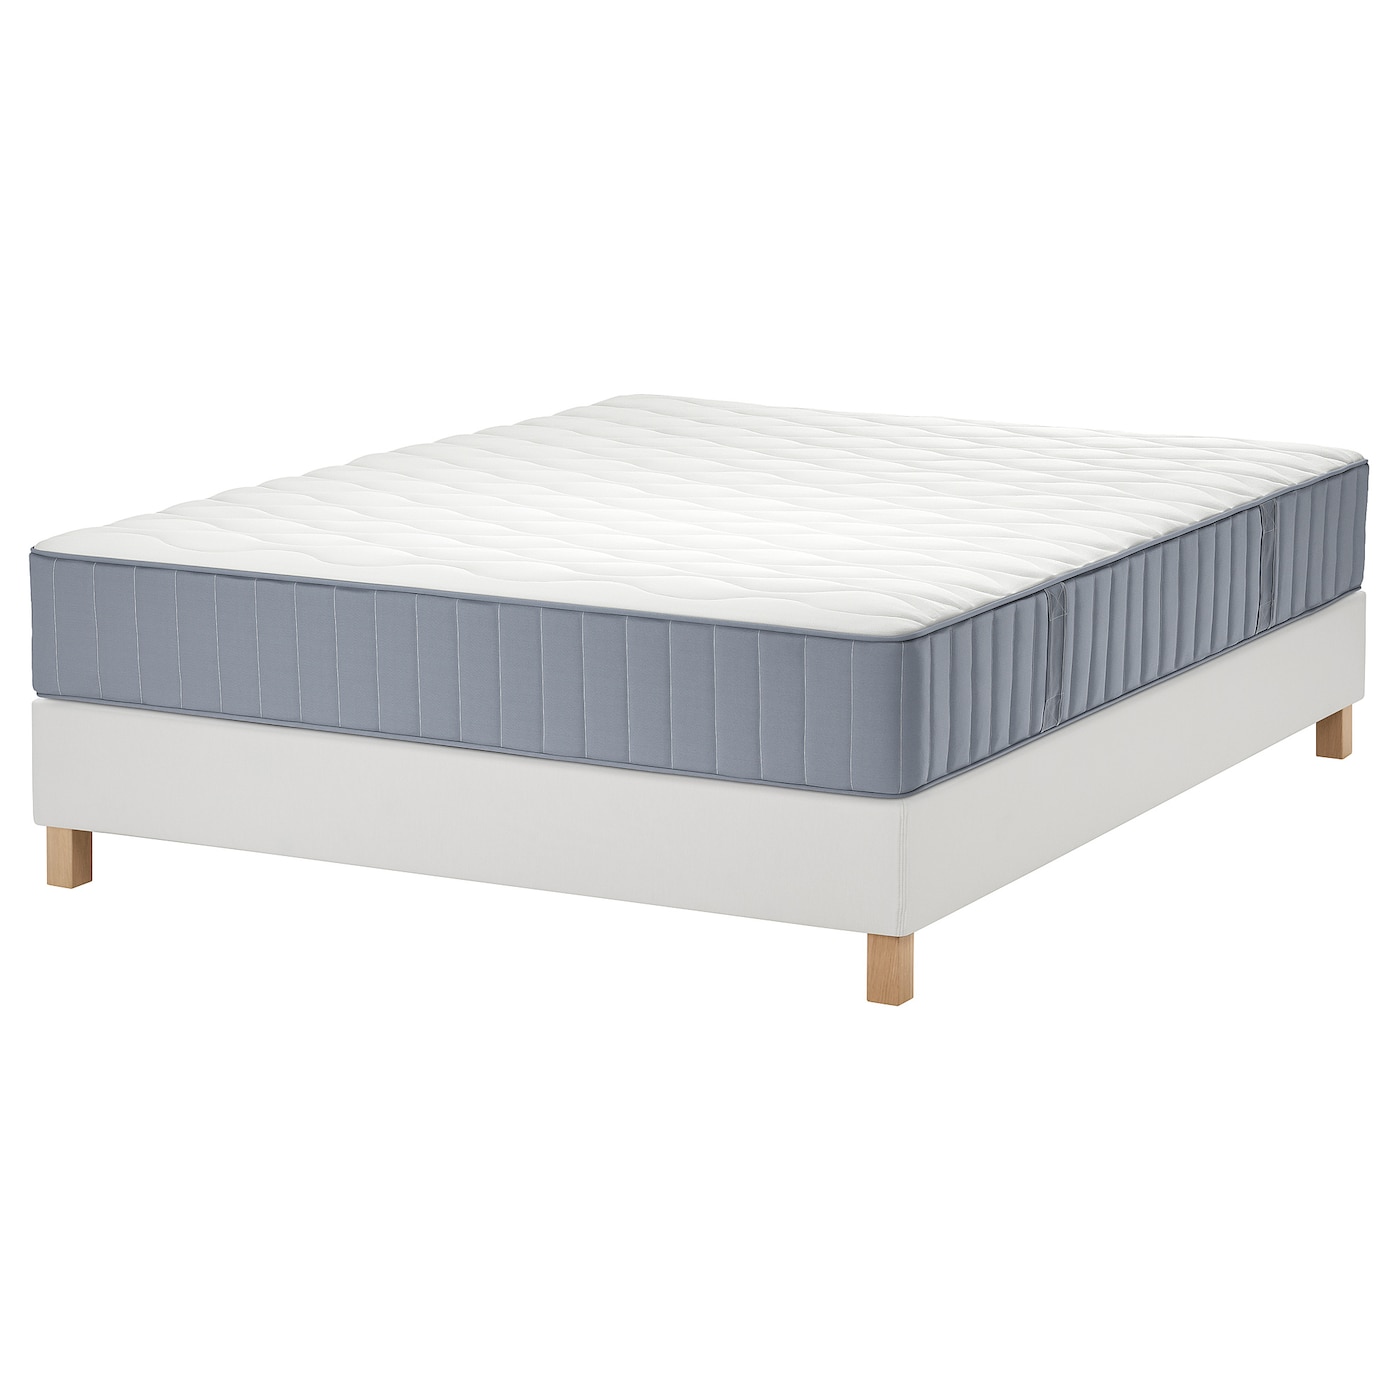 Кровать - LYNGÖR / LYNGОR IKEA/ ЛЮНГЕРЬ ИКЕА,  180х200 см, белый